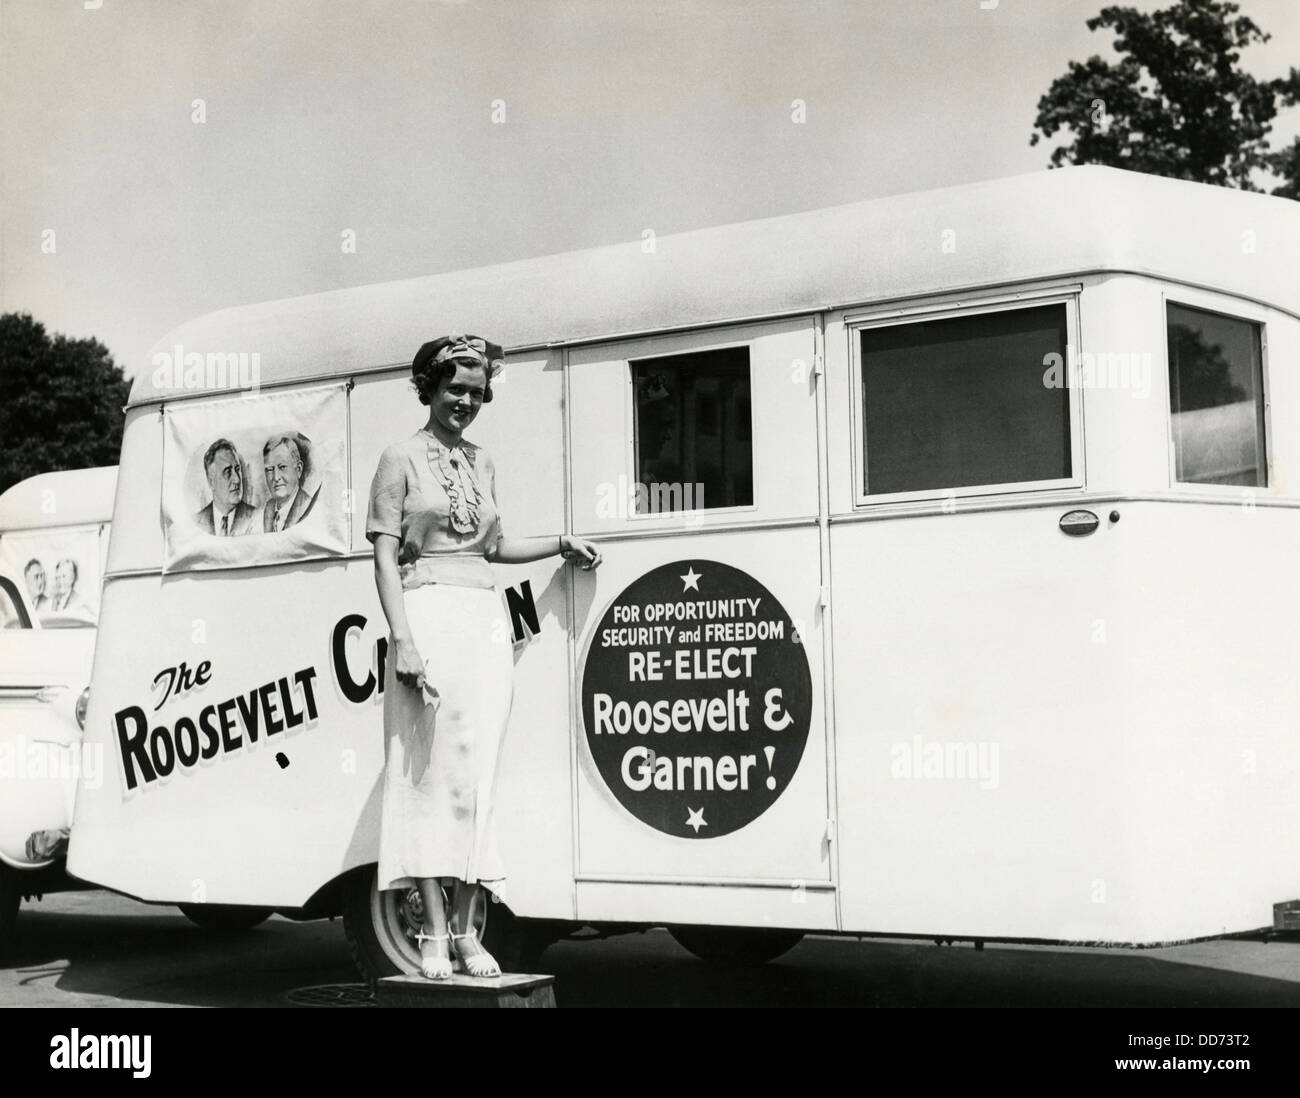 Roosevelt remorque caravane a parcouru le pays dans l'élection présidentielle de 1936. Les travailleurs de la campagne pose avec une remorque Banque D'Images